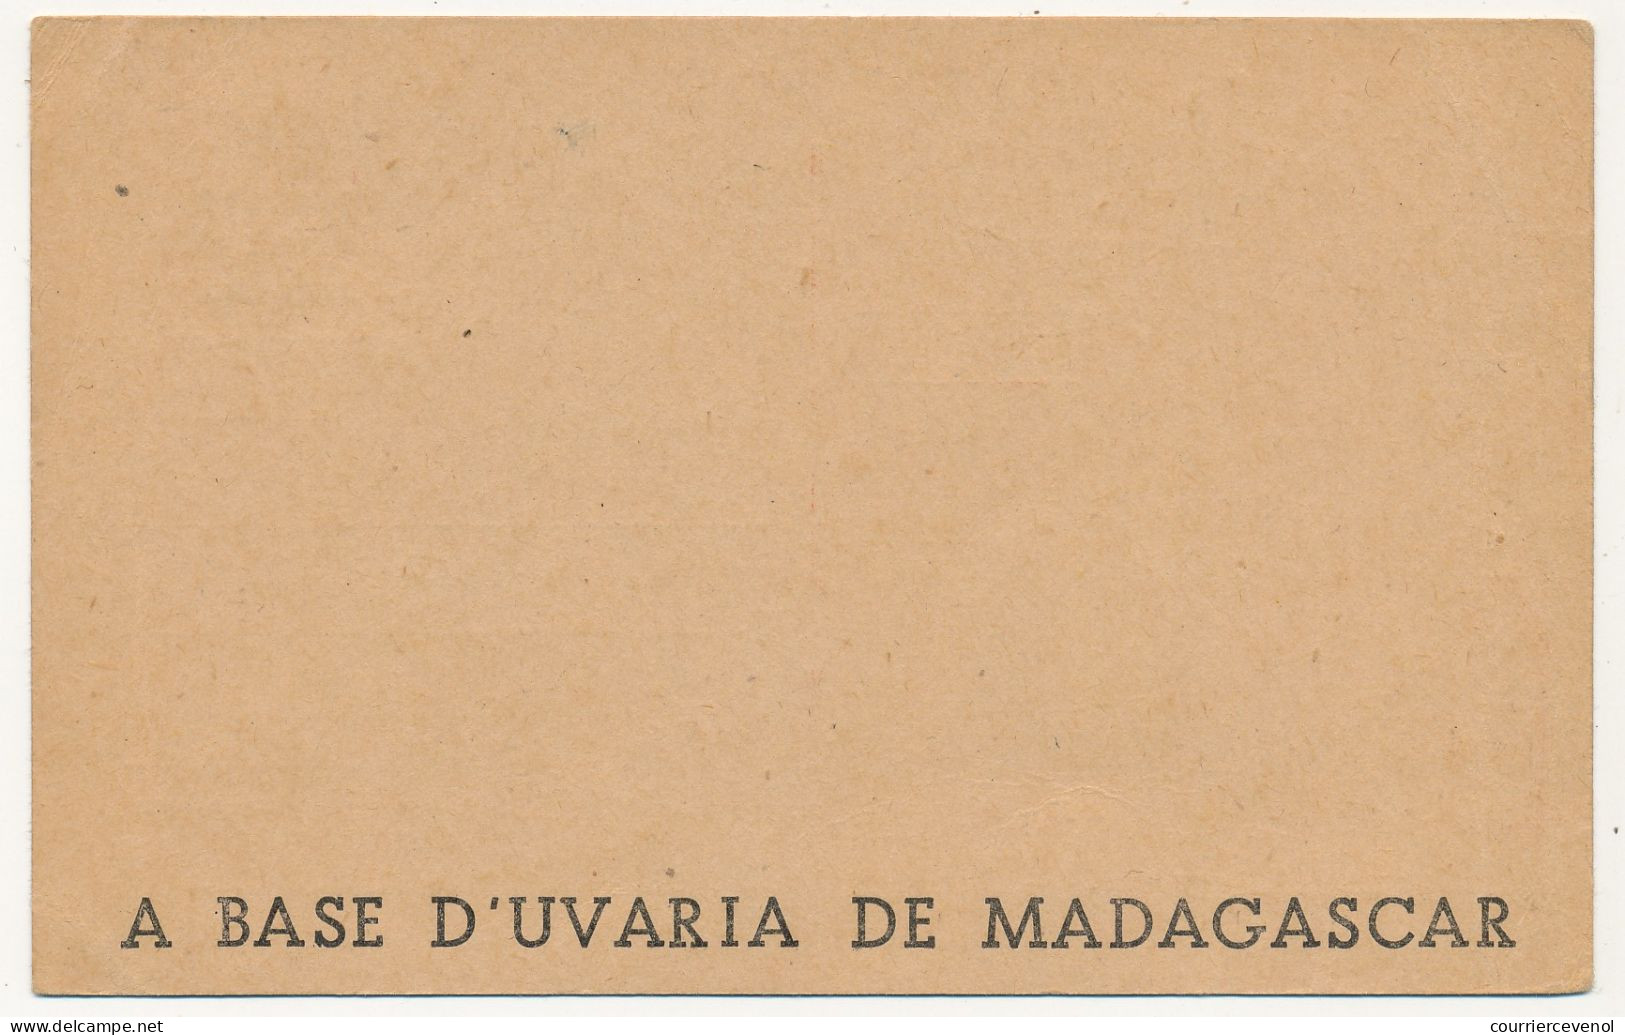 Carte FM Publicitaire - Flacon D'extrait De Frileuse ... - 1939/45 - Briefe U. Dokumente